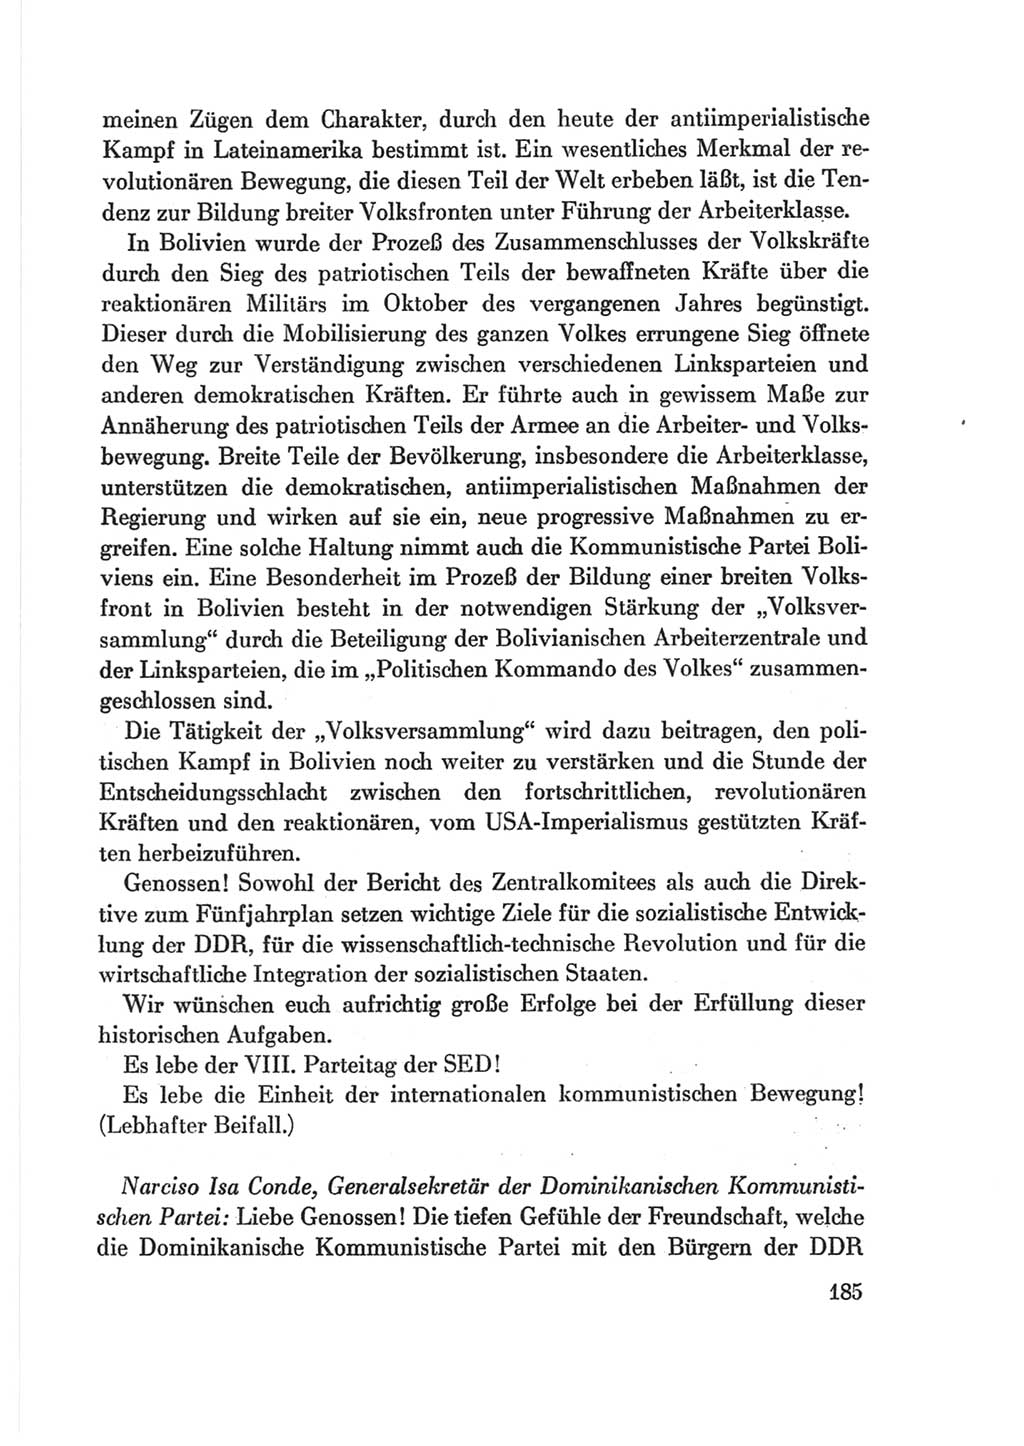 Protokoll der Verhandlungen des Ⅷ. Parteitages der Sozialistischen Einheitspartei Deutschlands (SED) [Deutsche Demokratische Republik (DDR)] 1971, Band 2, Seite 185 (Prot. Verh. Ⅷ. PT SED DDR 1971, Bd. 2, S. 185)